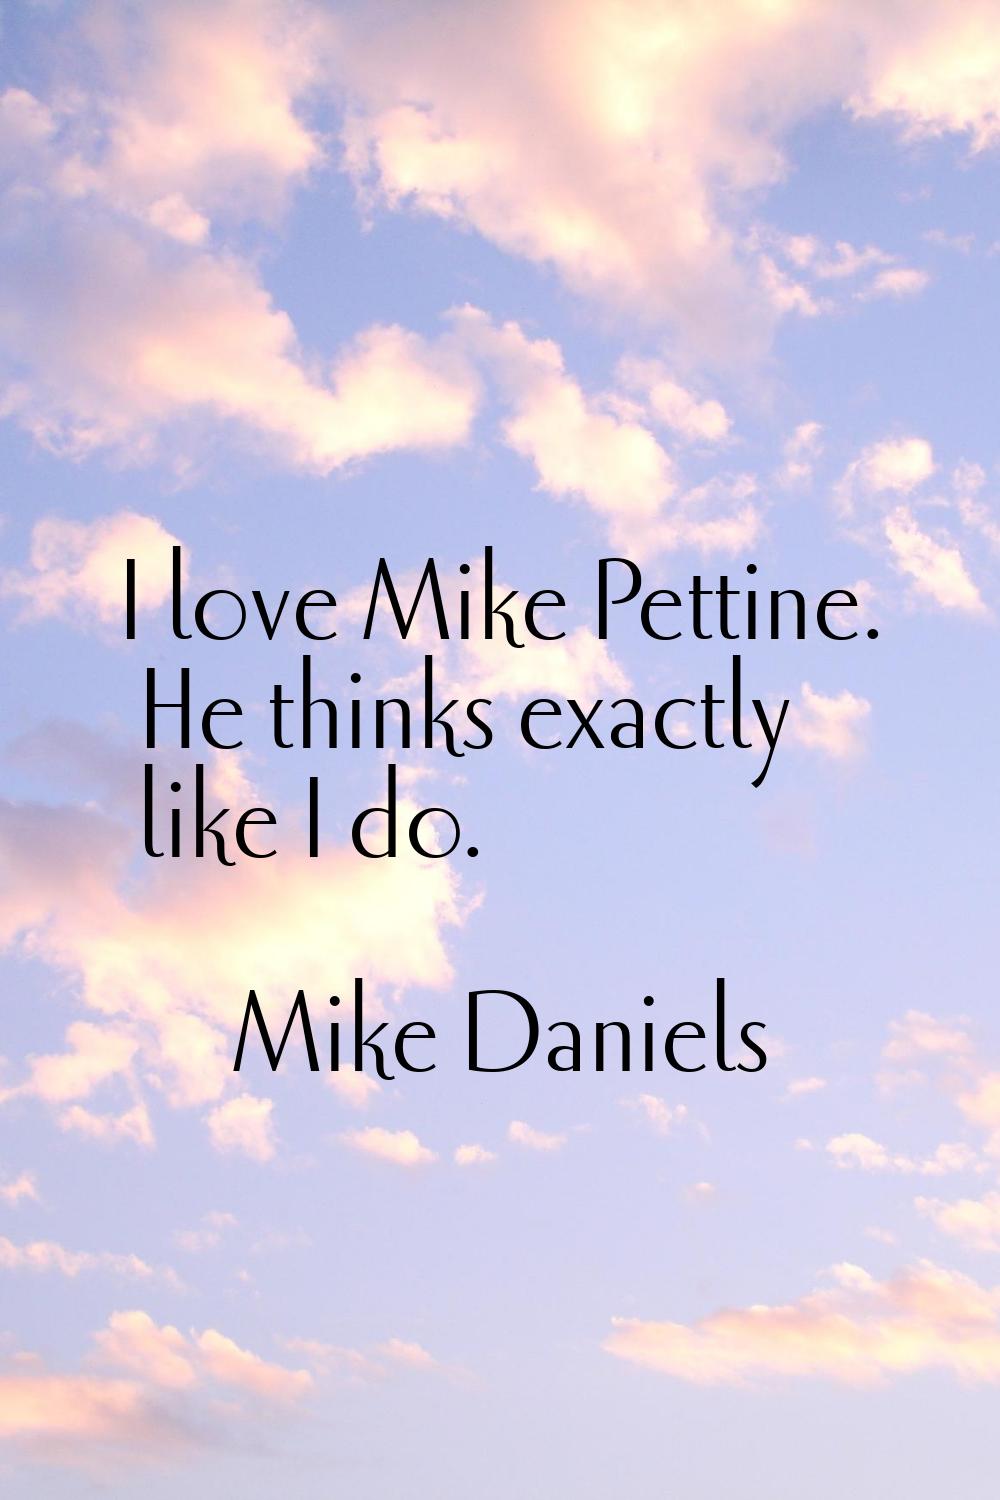 I love Mike Pettine. He thinks exactly like I do.